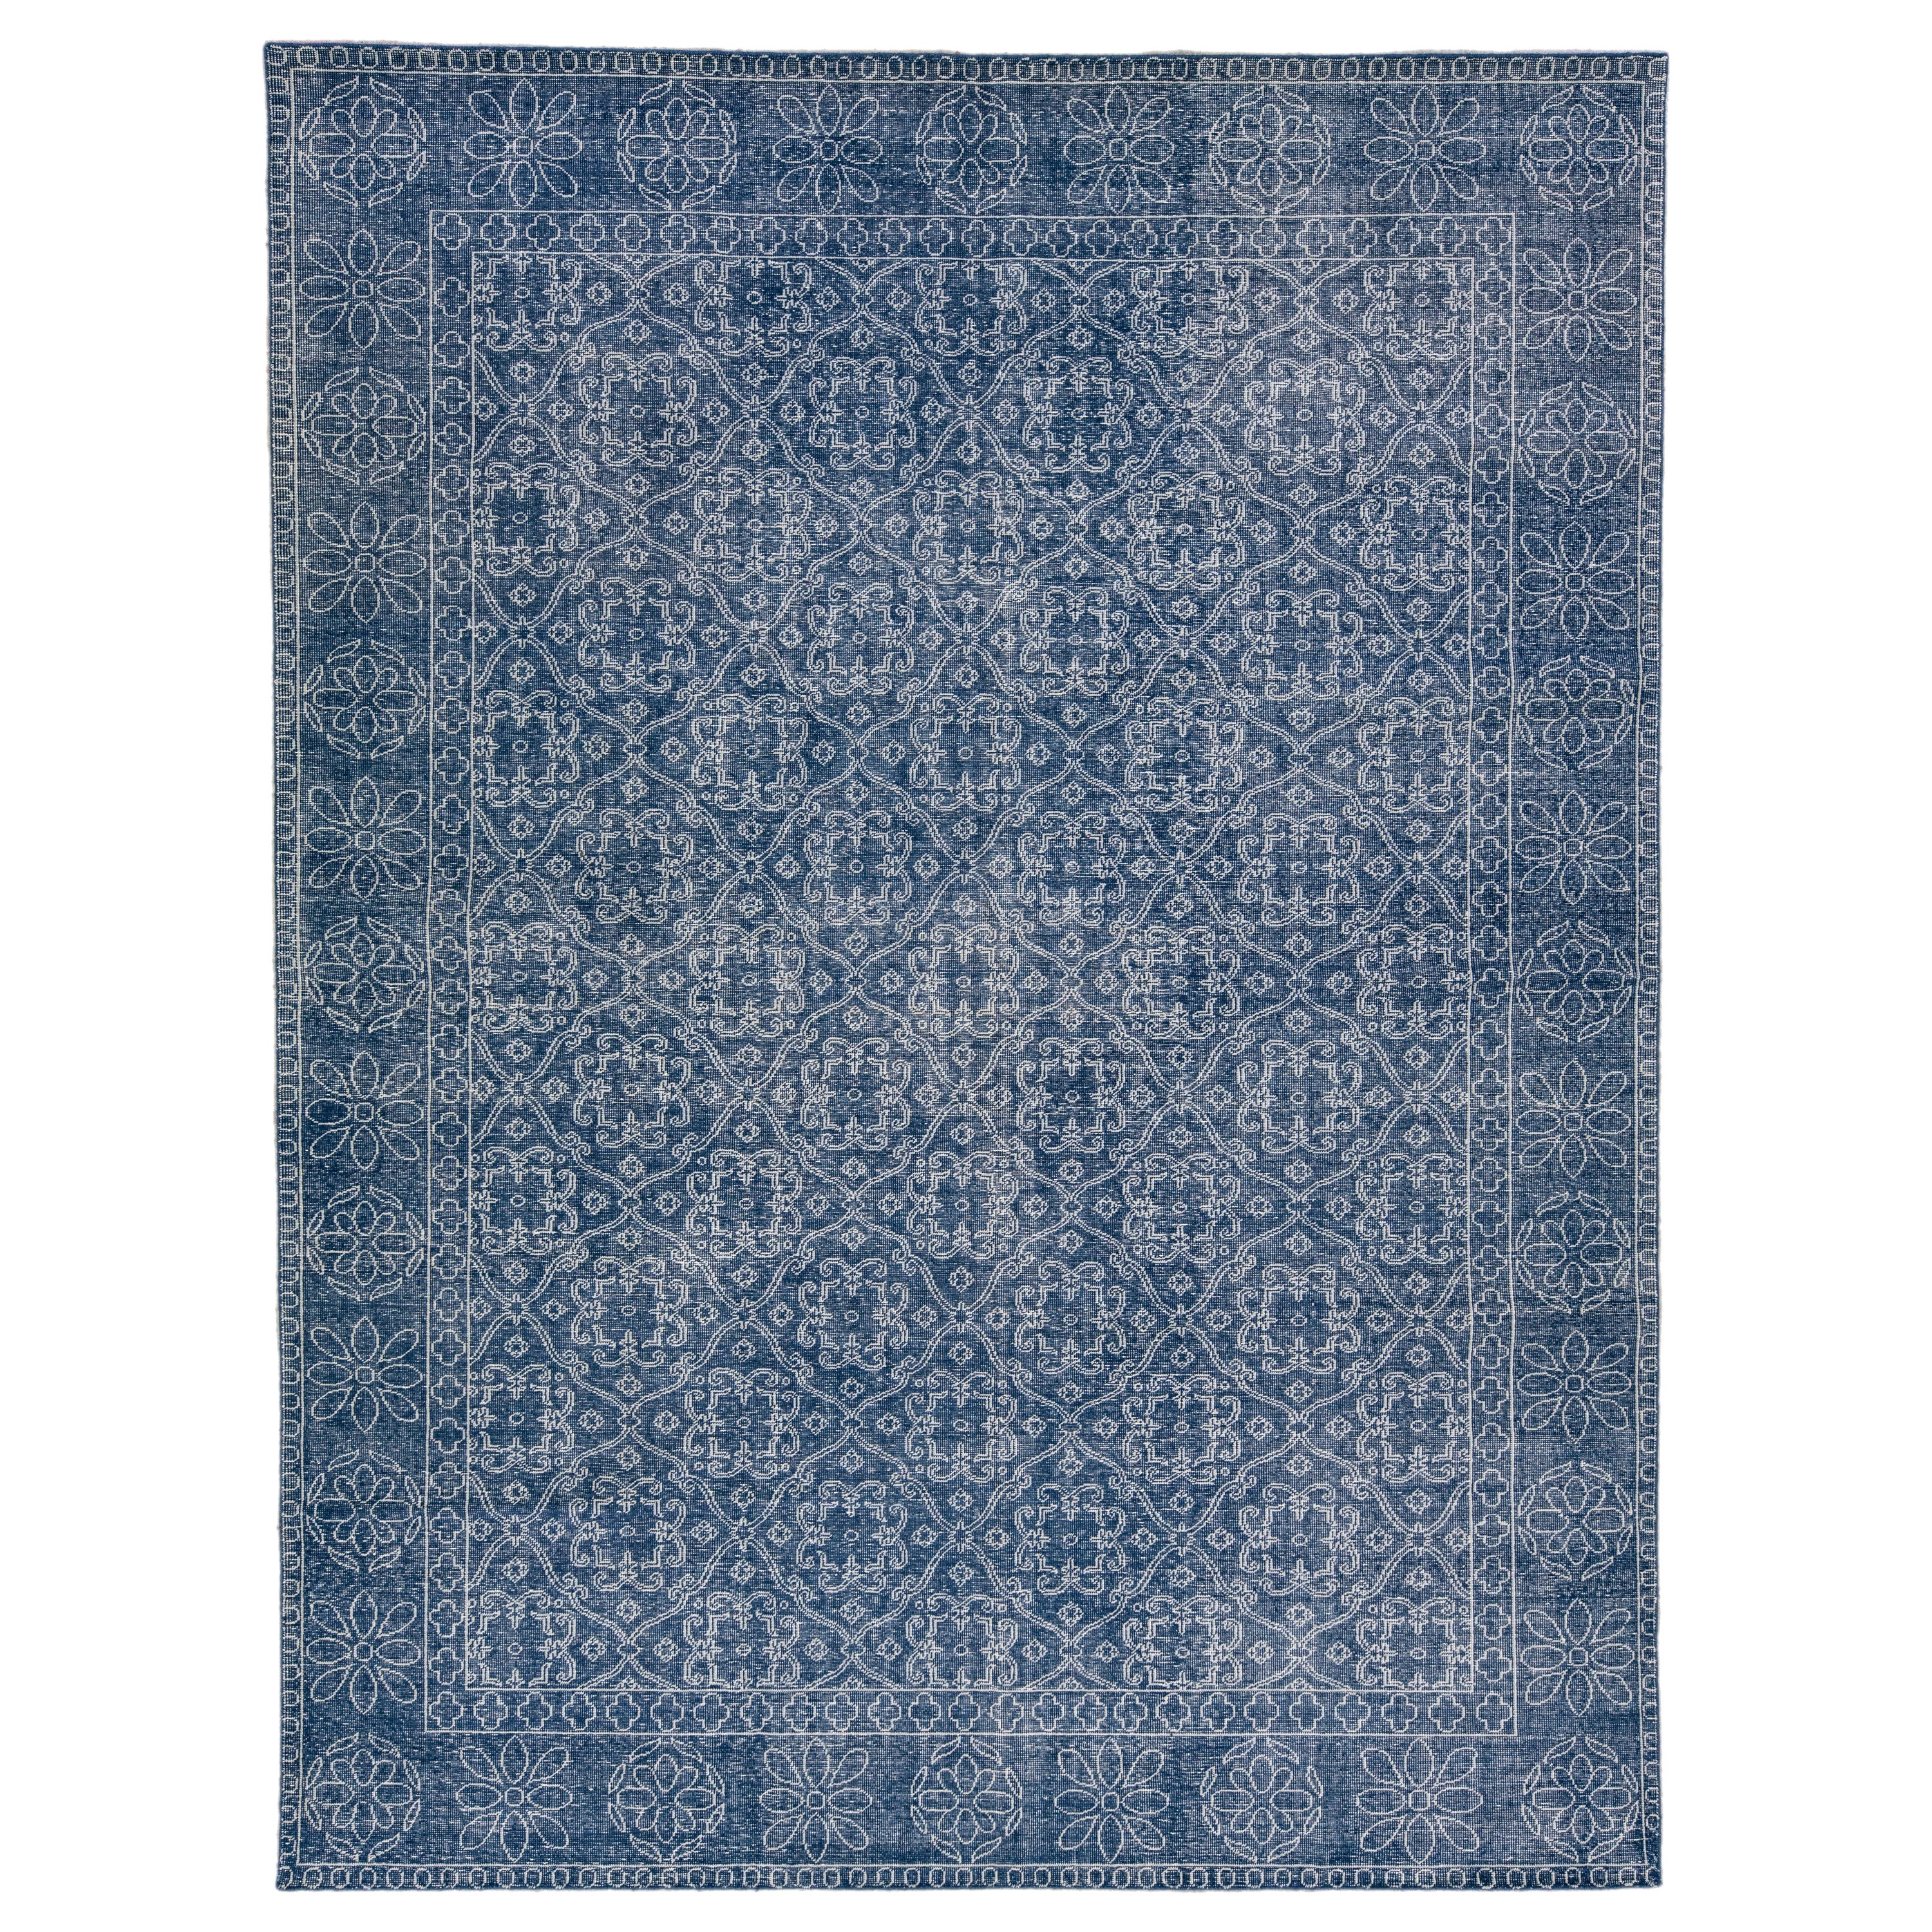 Blauer handgefertigter Wollteppich mit Blumen-Trellis-Motiv, Mid-Century Modern